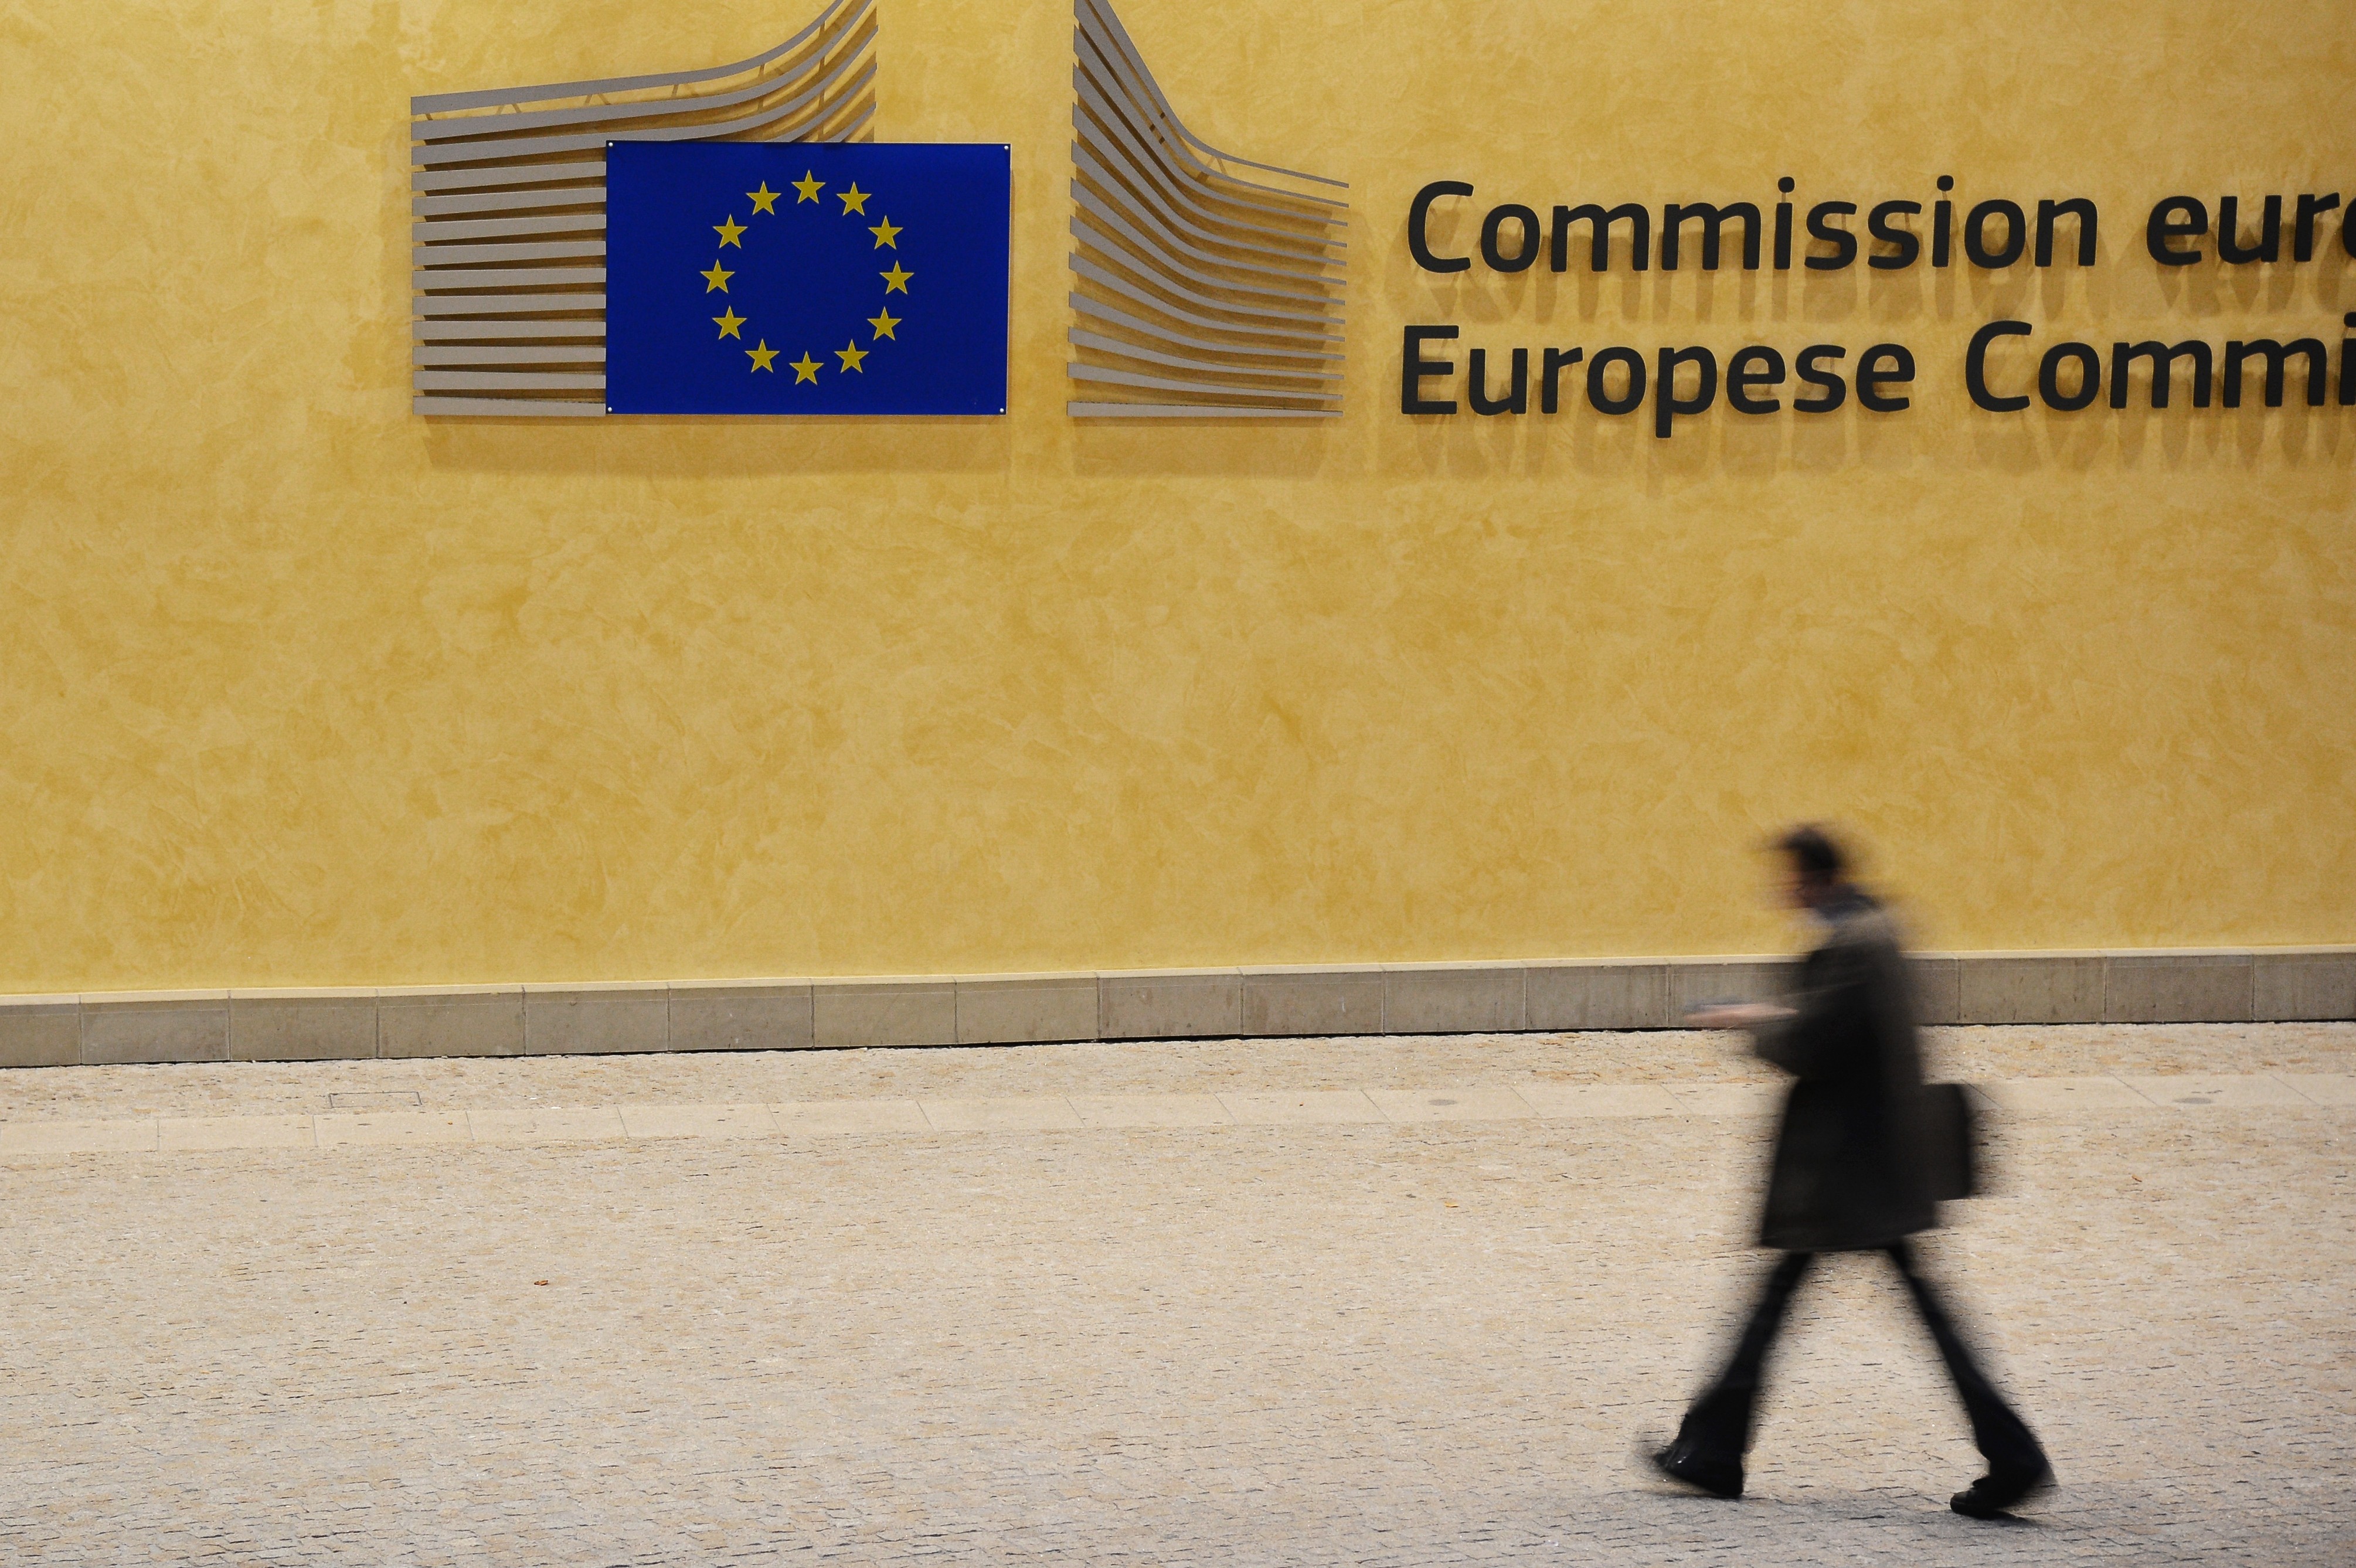 Здание Европейской комиссии в Брюсселе.&nbsp;Фото: &copy; РИА Новости / Алексей Витвицкий